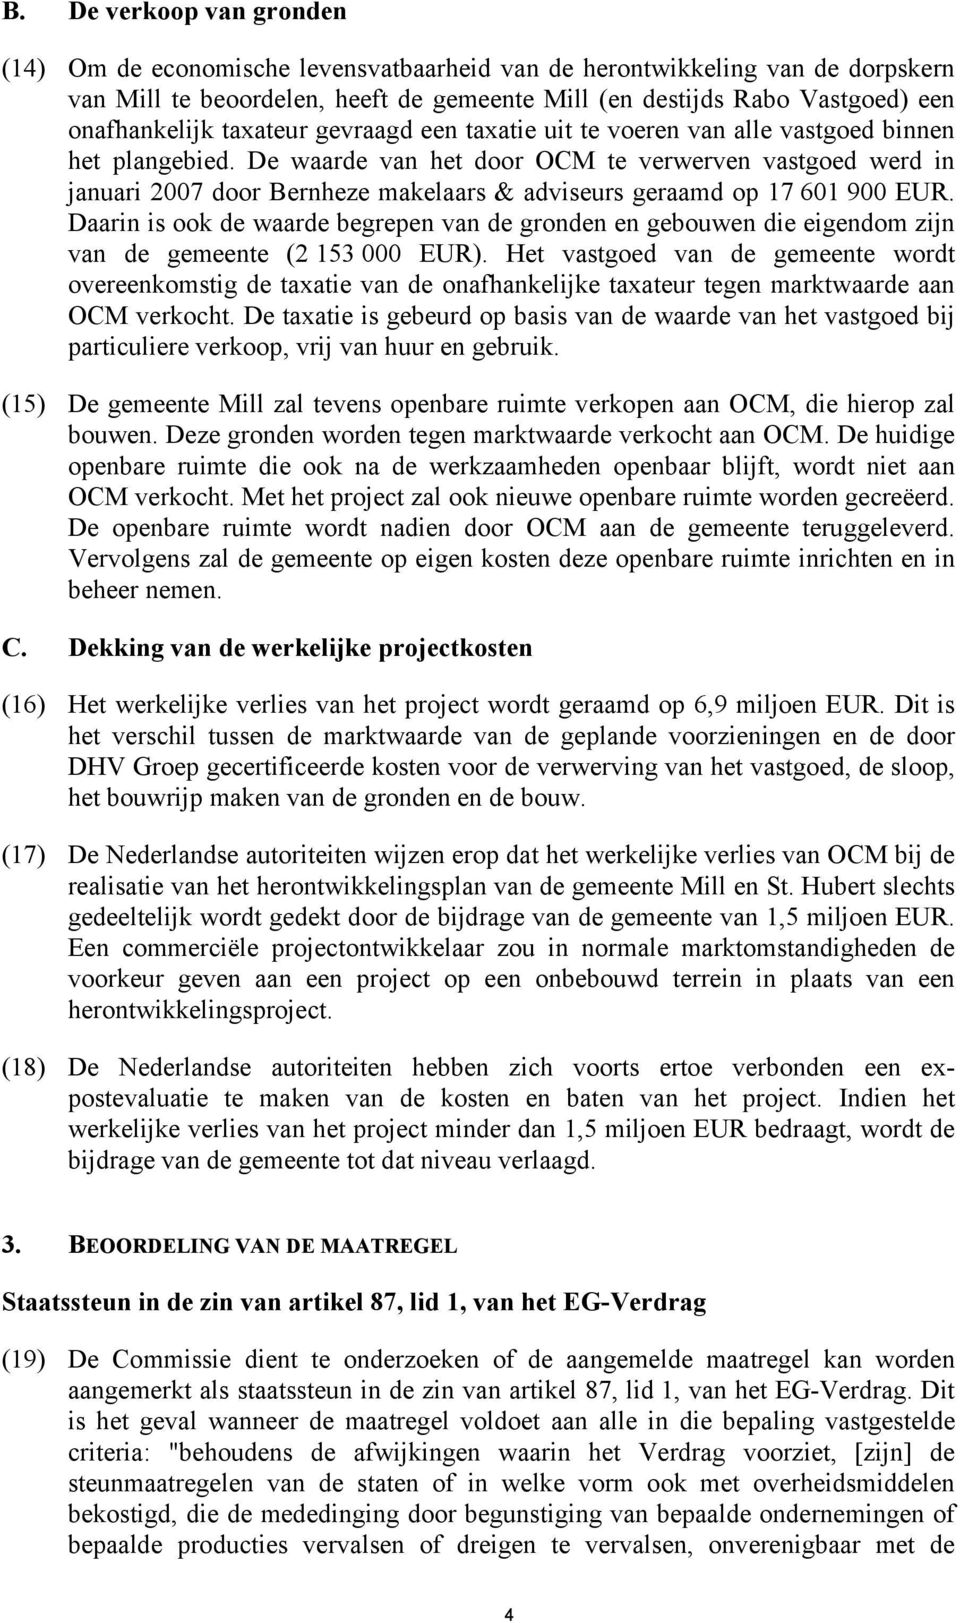 De waarde van het door OCM te verwerven vastgoed werd in januari 2007 door Bernheze makelaars & adviseurs geraamd op 17 601 900 EUR.